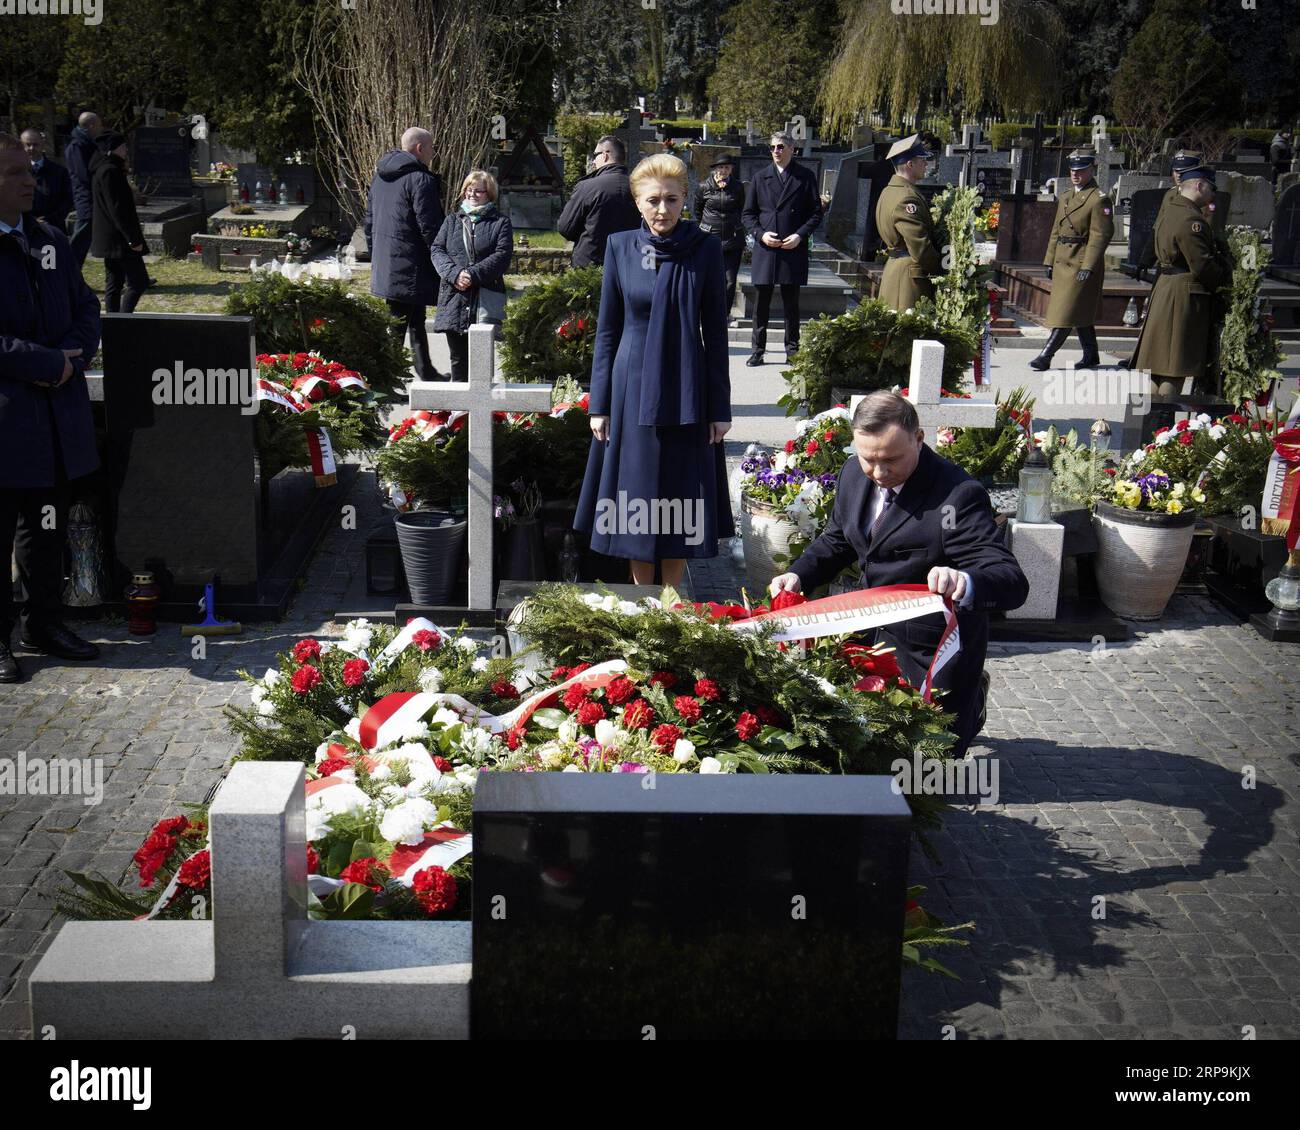 (190410) -- VARSOVIE, le 10 avril 2019 -- le président polonais Andrzej Duda et son épouse Agata Kornhauser-Duda assistent à une cérémonie de commémoration à Varsovie, en Pologne, le 10 avril 2019. Les dirigeants politiques polonais animent tout au long du mercredi une série d événements commémoratifs pour marquer le neuvième anniversaire de l accident d avion de Smolensk, qui a tué 96 personnes, dont l ancien président polonais Lech Kaczynski. POLOGNE-VARSOVIE-SMOLENSK CRASH-ANNIVERSAIRE-COMMÉMORATION JAAPXARRIENS PUBLICATIONXNOTXINXCHN Banque D'Images